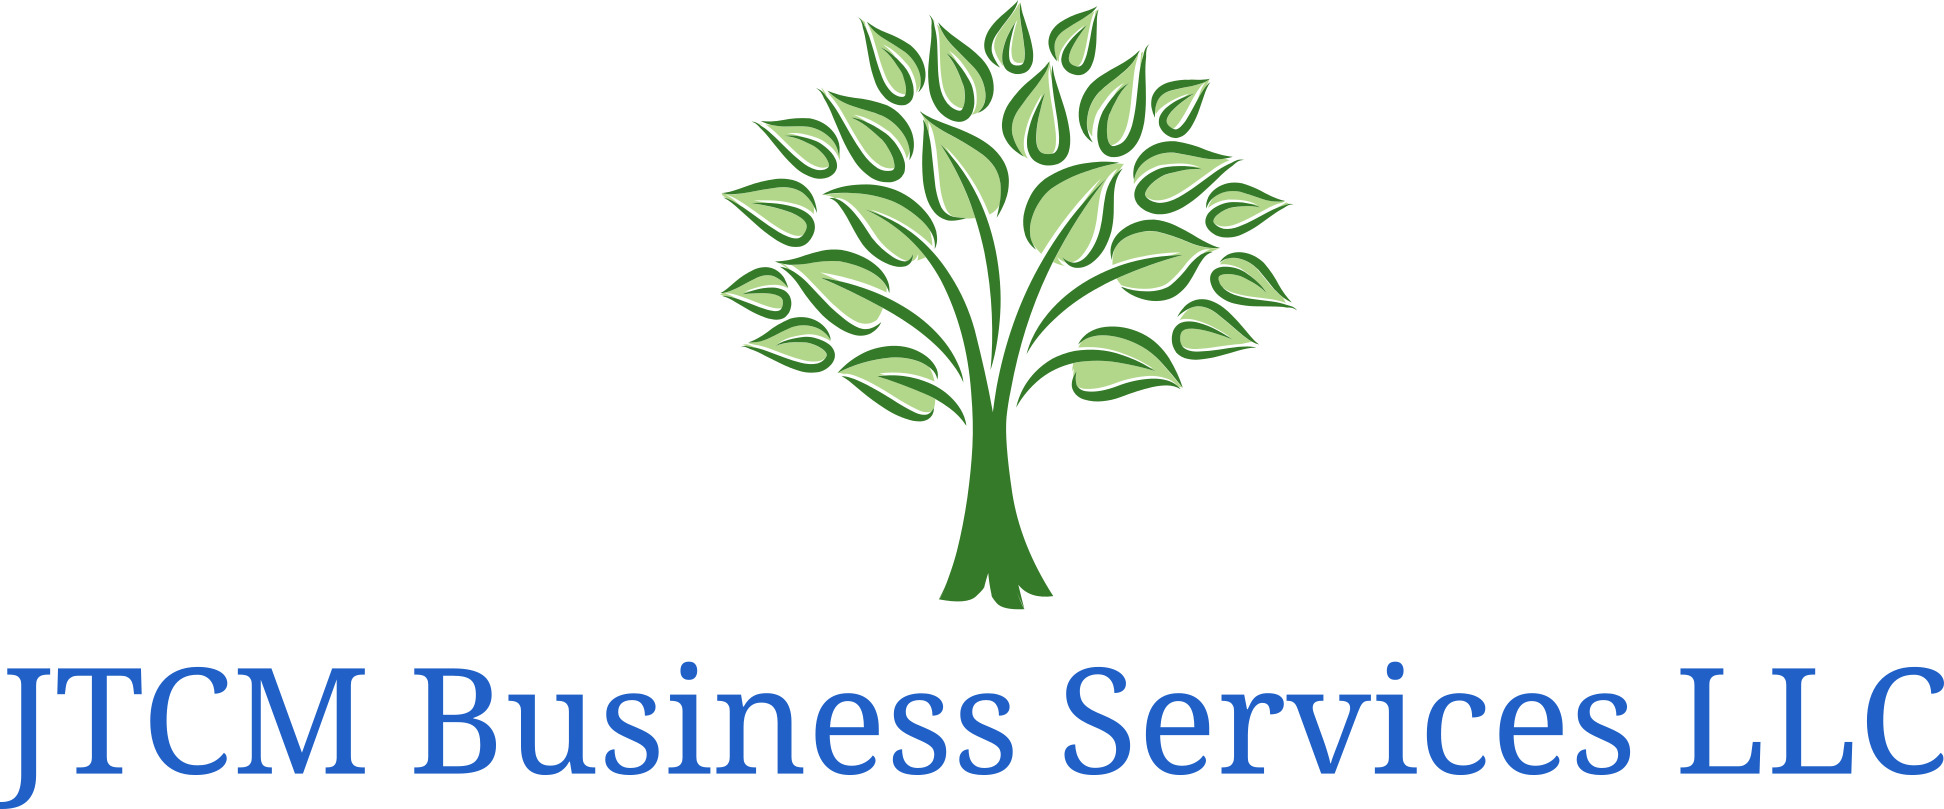 JTCM Business Services LLC